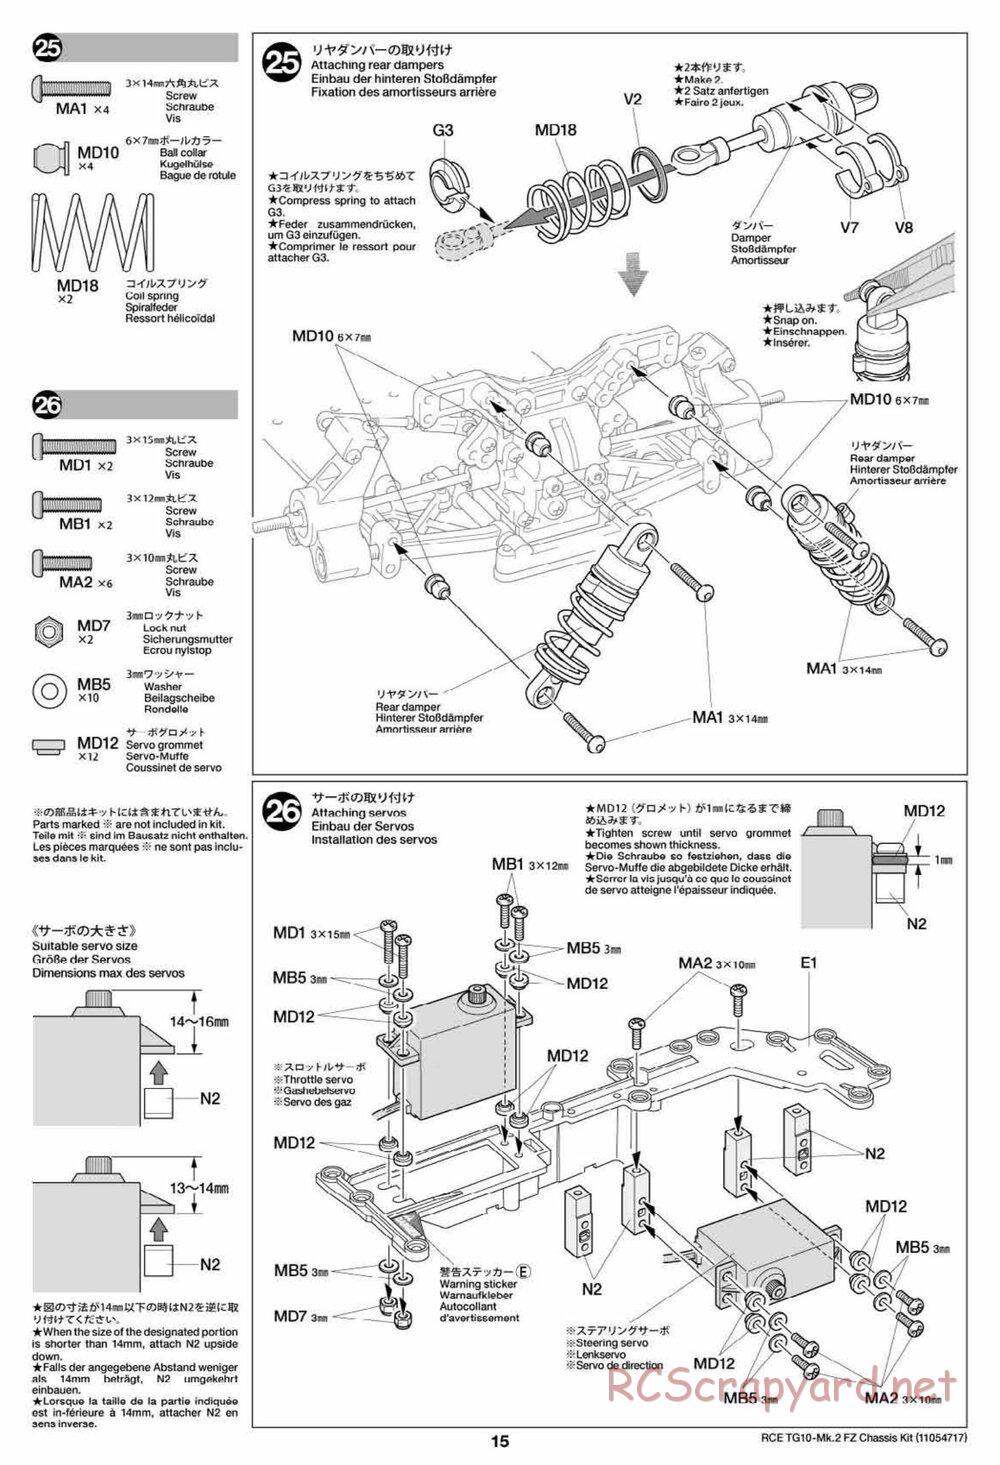 Tamiya - TG10 Mk.2 FZ Chassis - Manual - Page 15